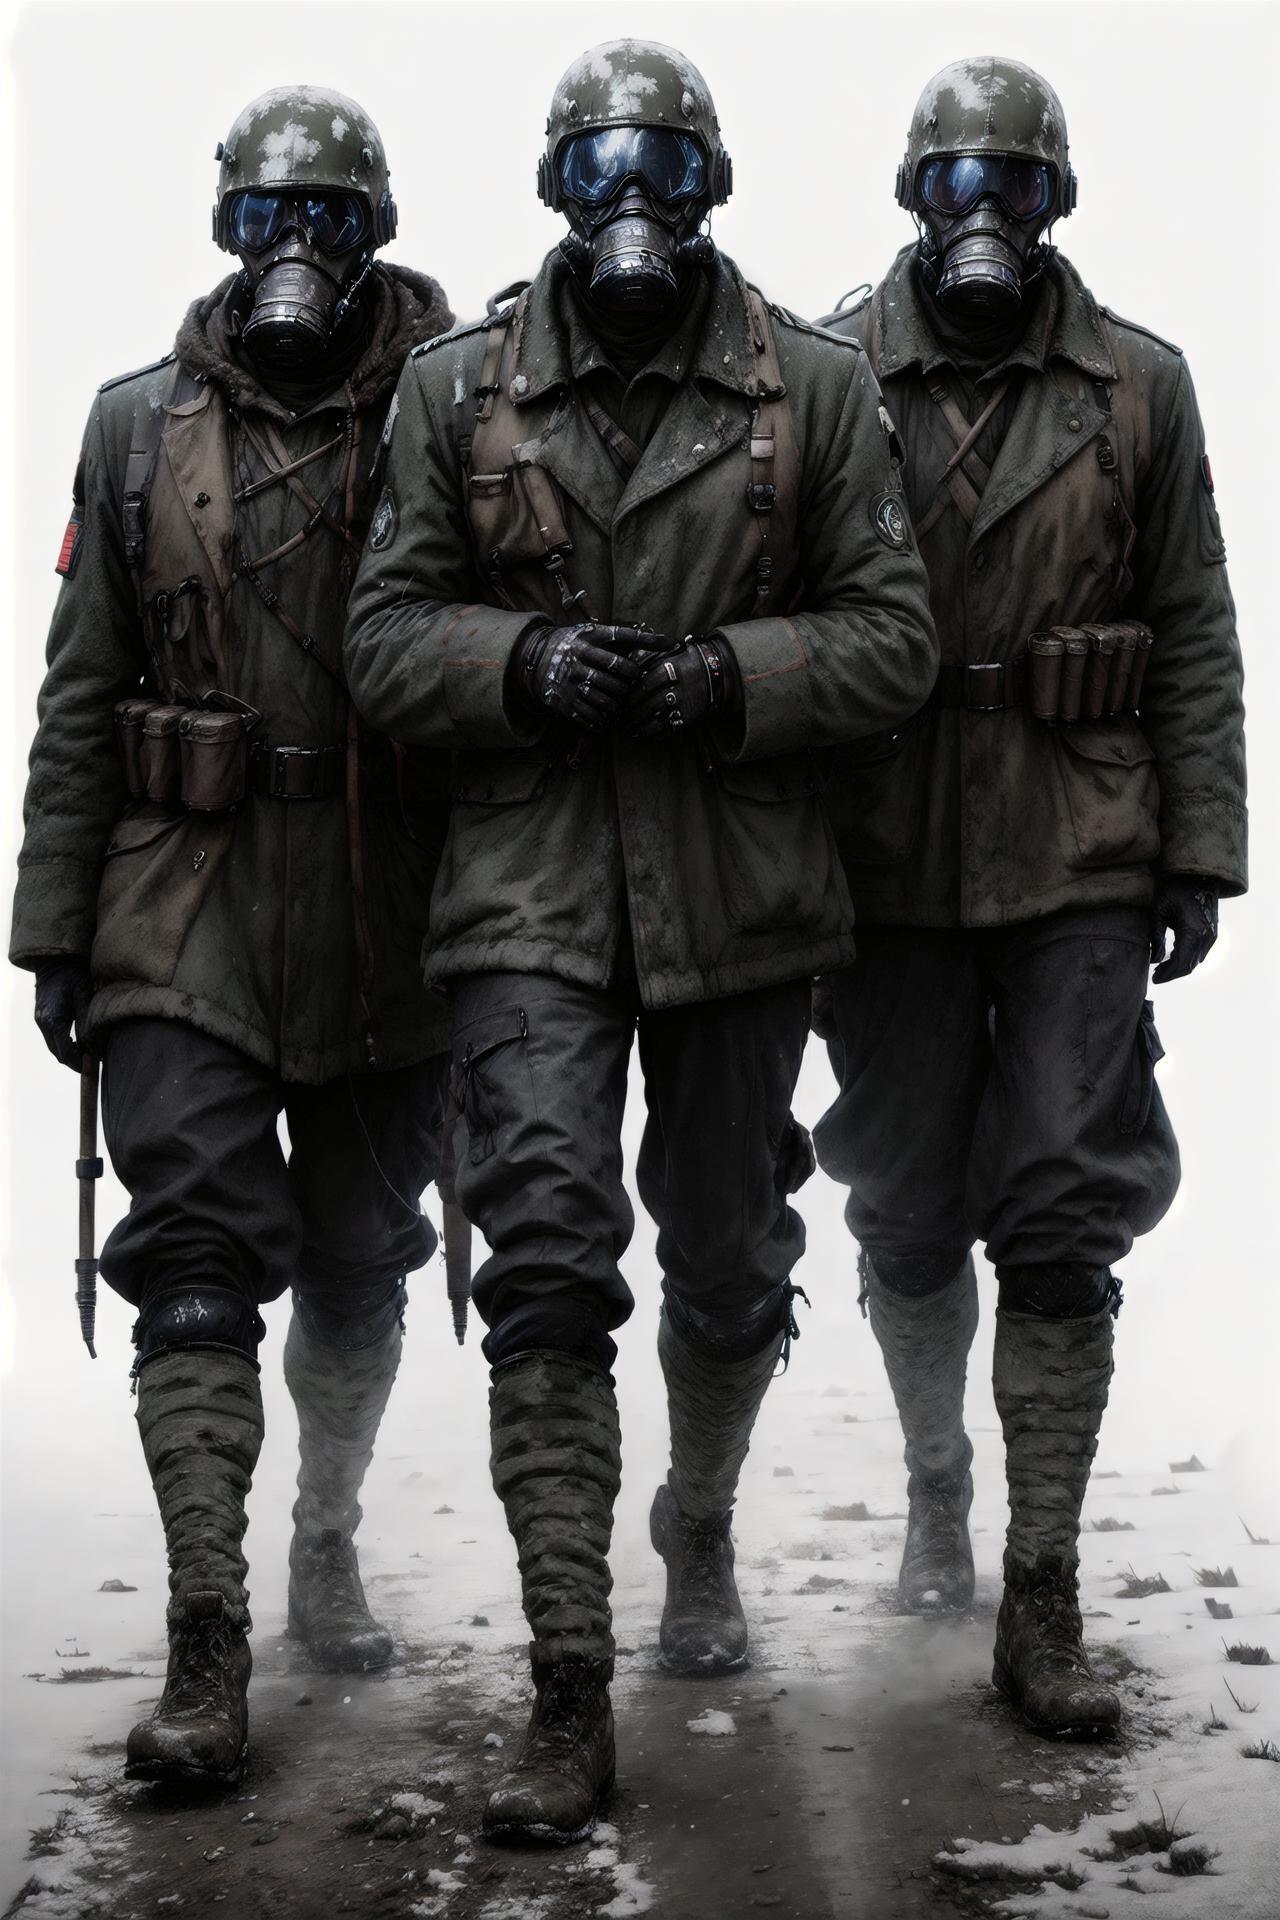 WW1 - German Soldier uniform image by shefchenko